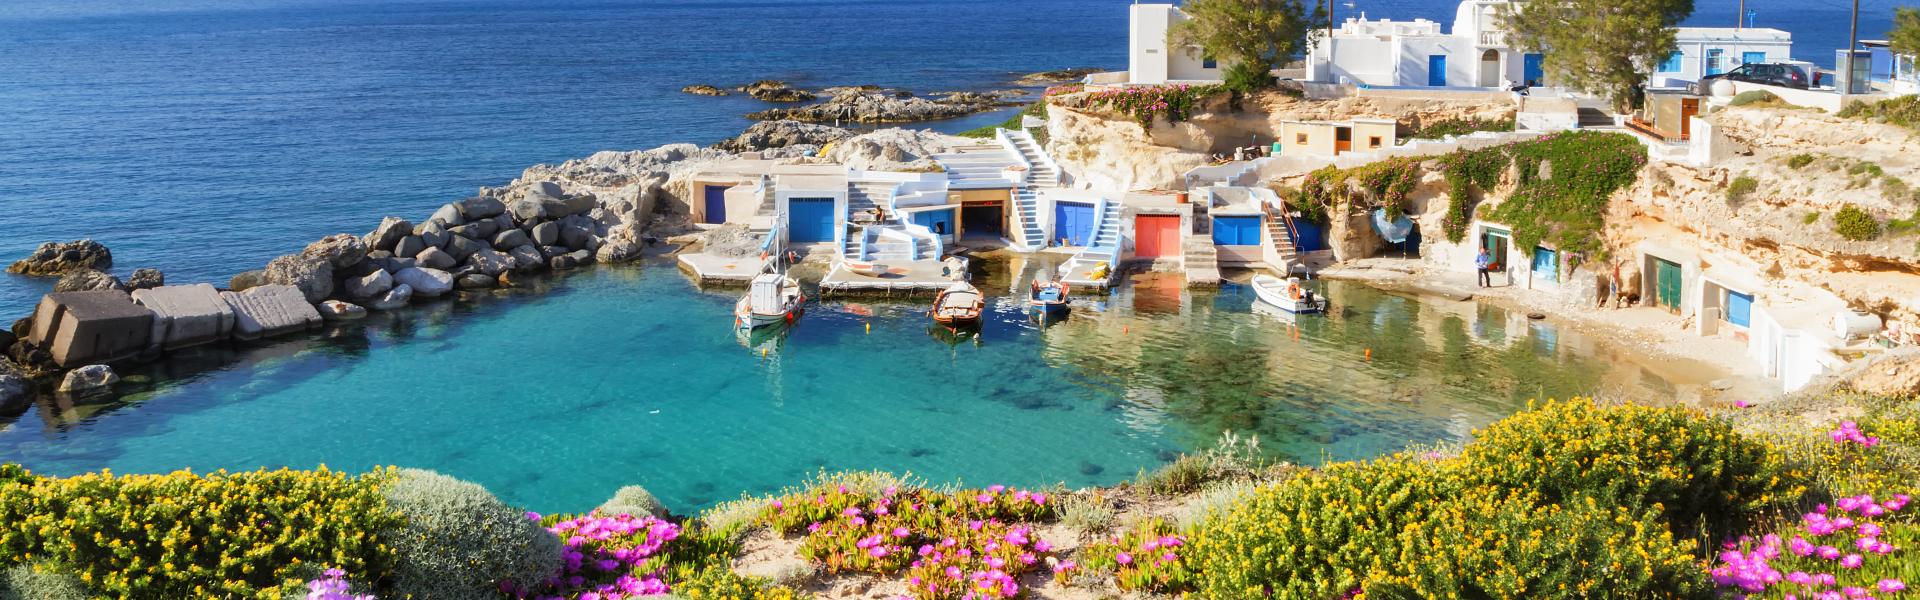 Case vacanze e appartamenti alle Isole Greche in affitto - CaseVacanza.it